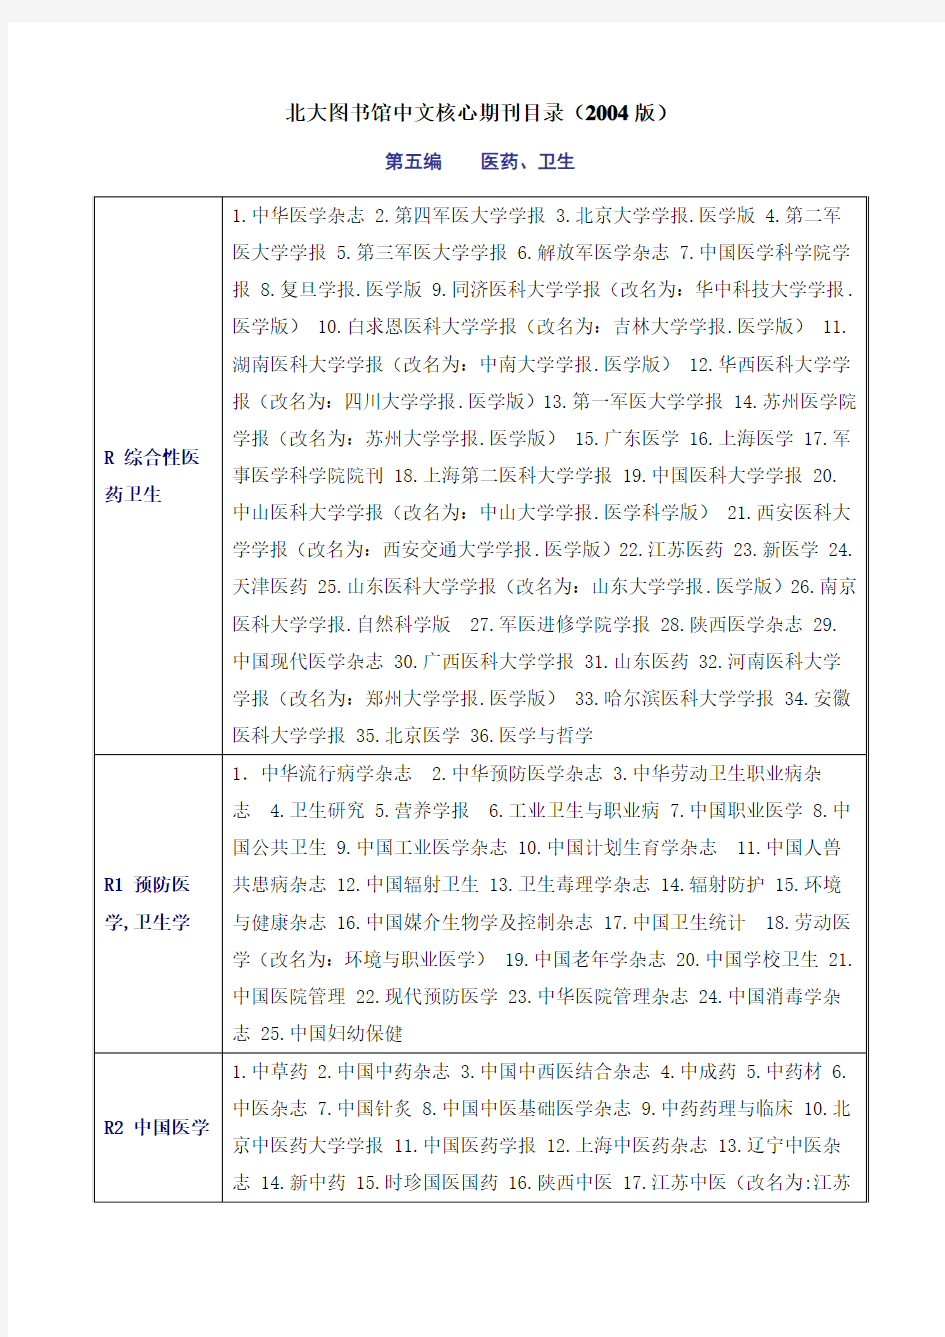 北大图书馆中文核心期刊目录(2004版)